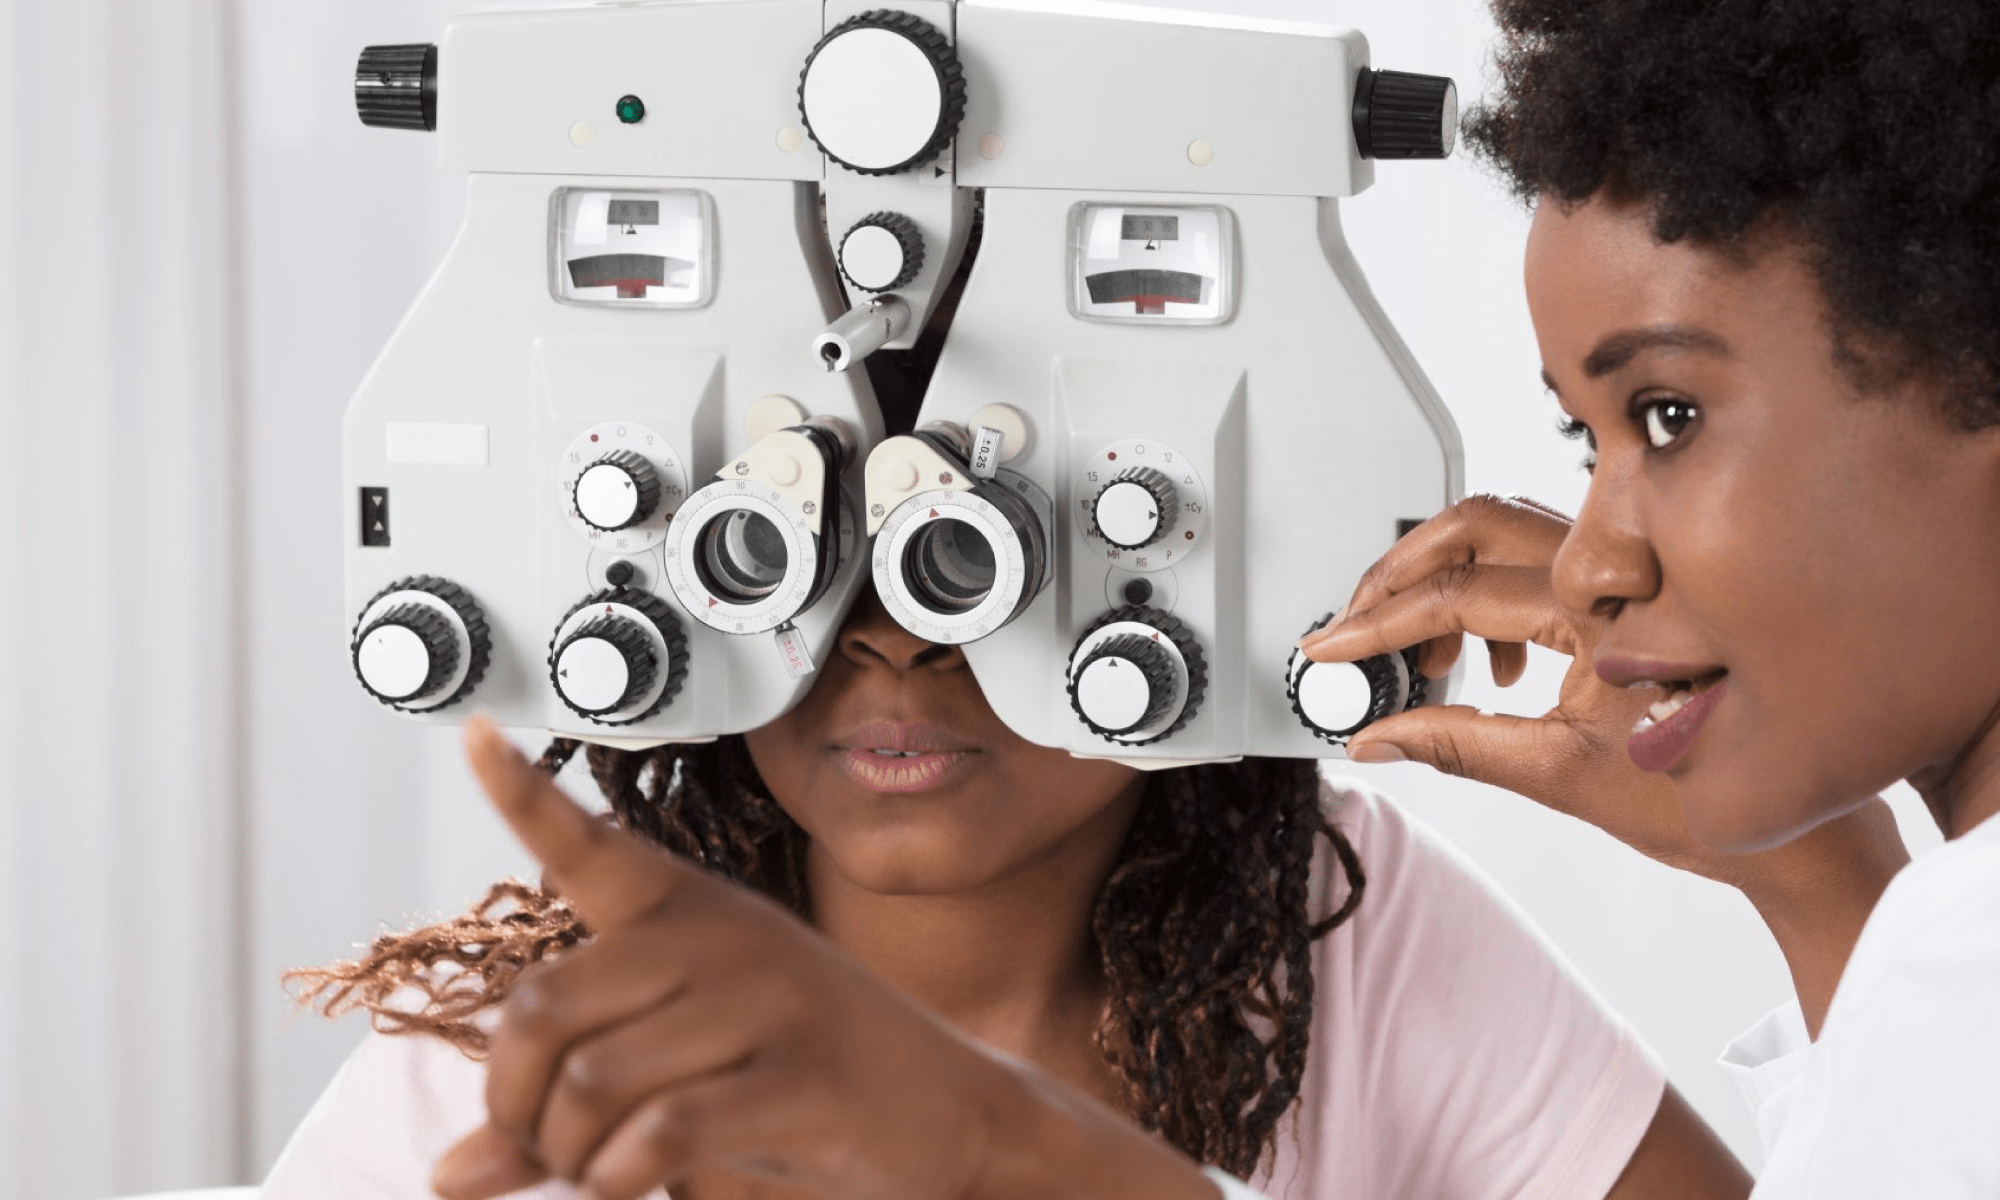 #PraCegoVer imagem ilustrativa. Há duas mulheres, uma médica oftalmologista e uma paciente durante uma consulta. Está escrito "07 de maio Dia Nacional do Oftalmologista". Há as logos da Retina Brasil e da Novartis.